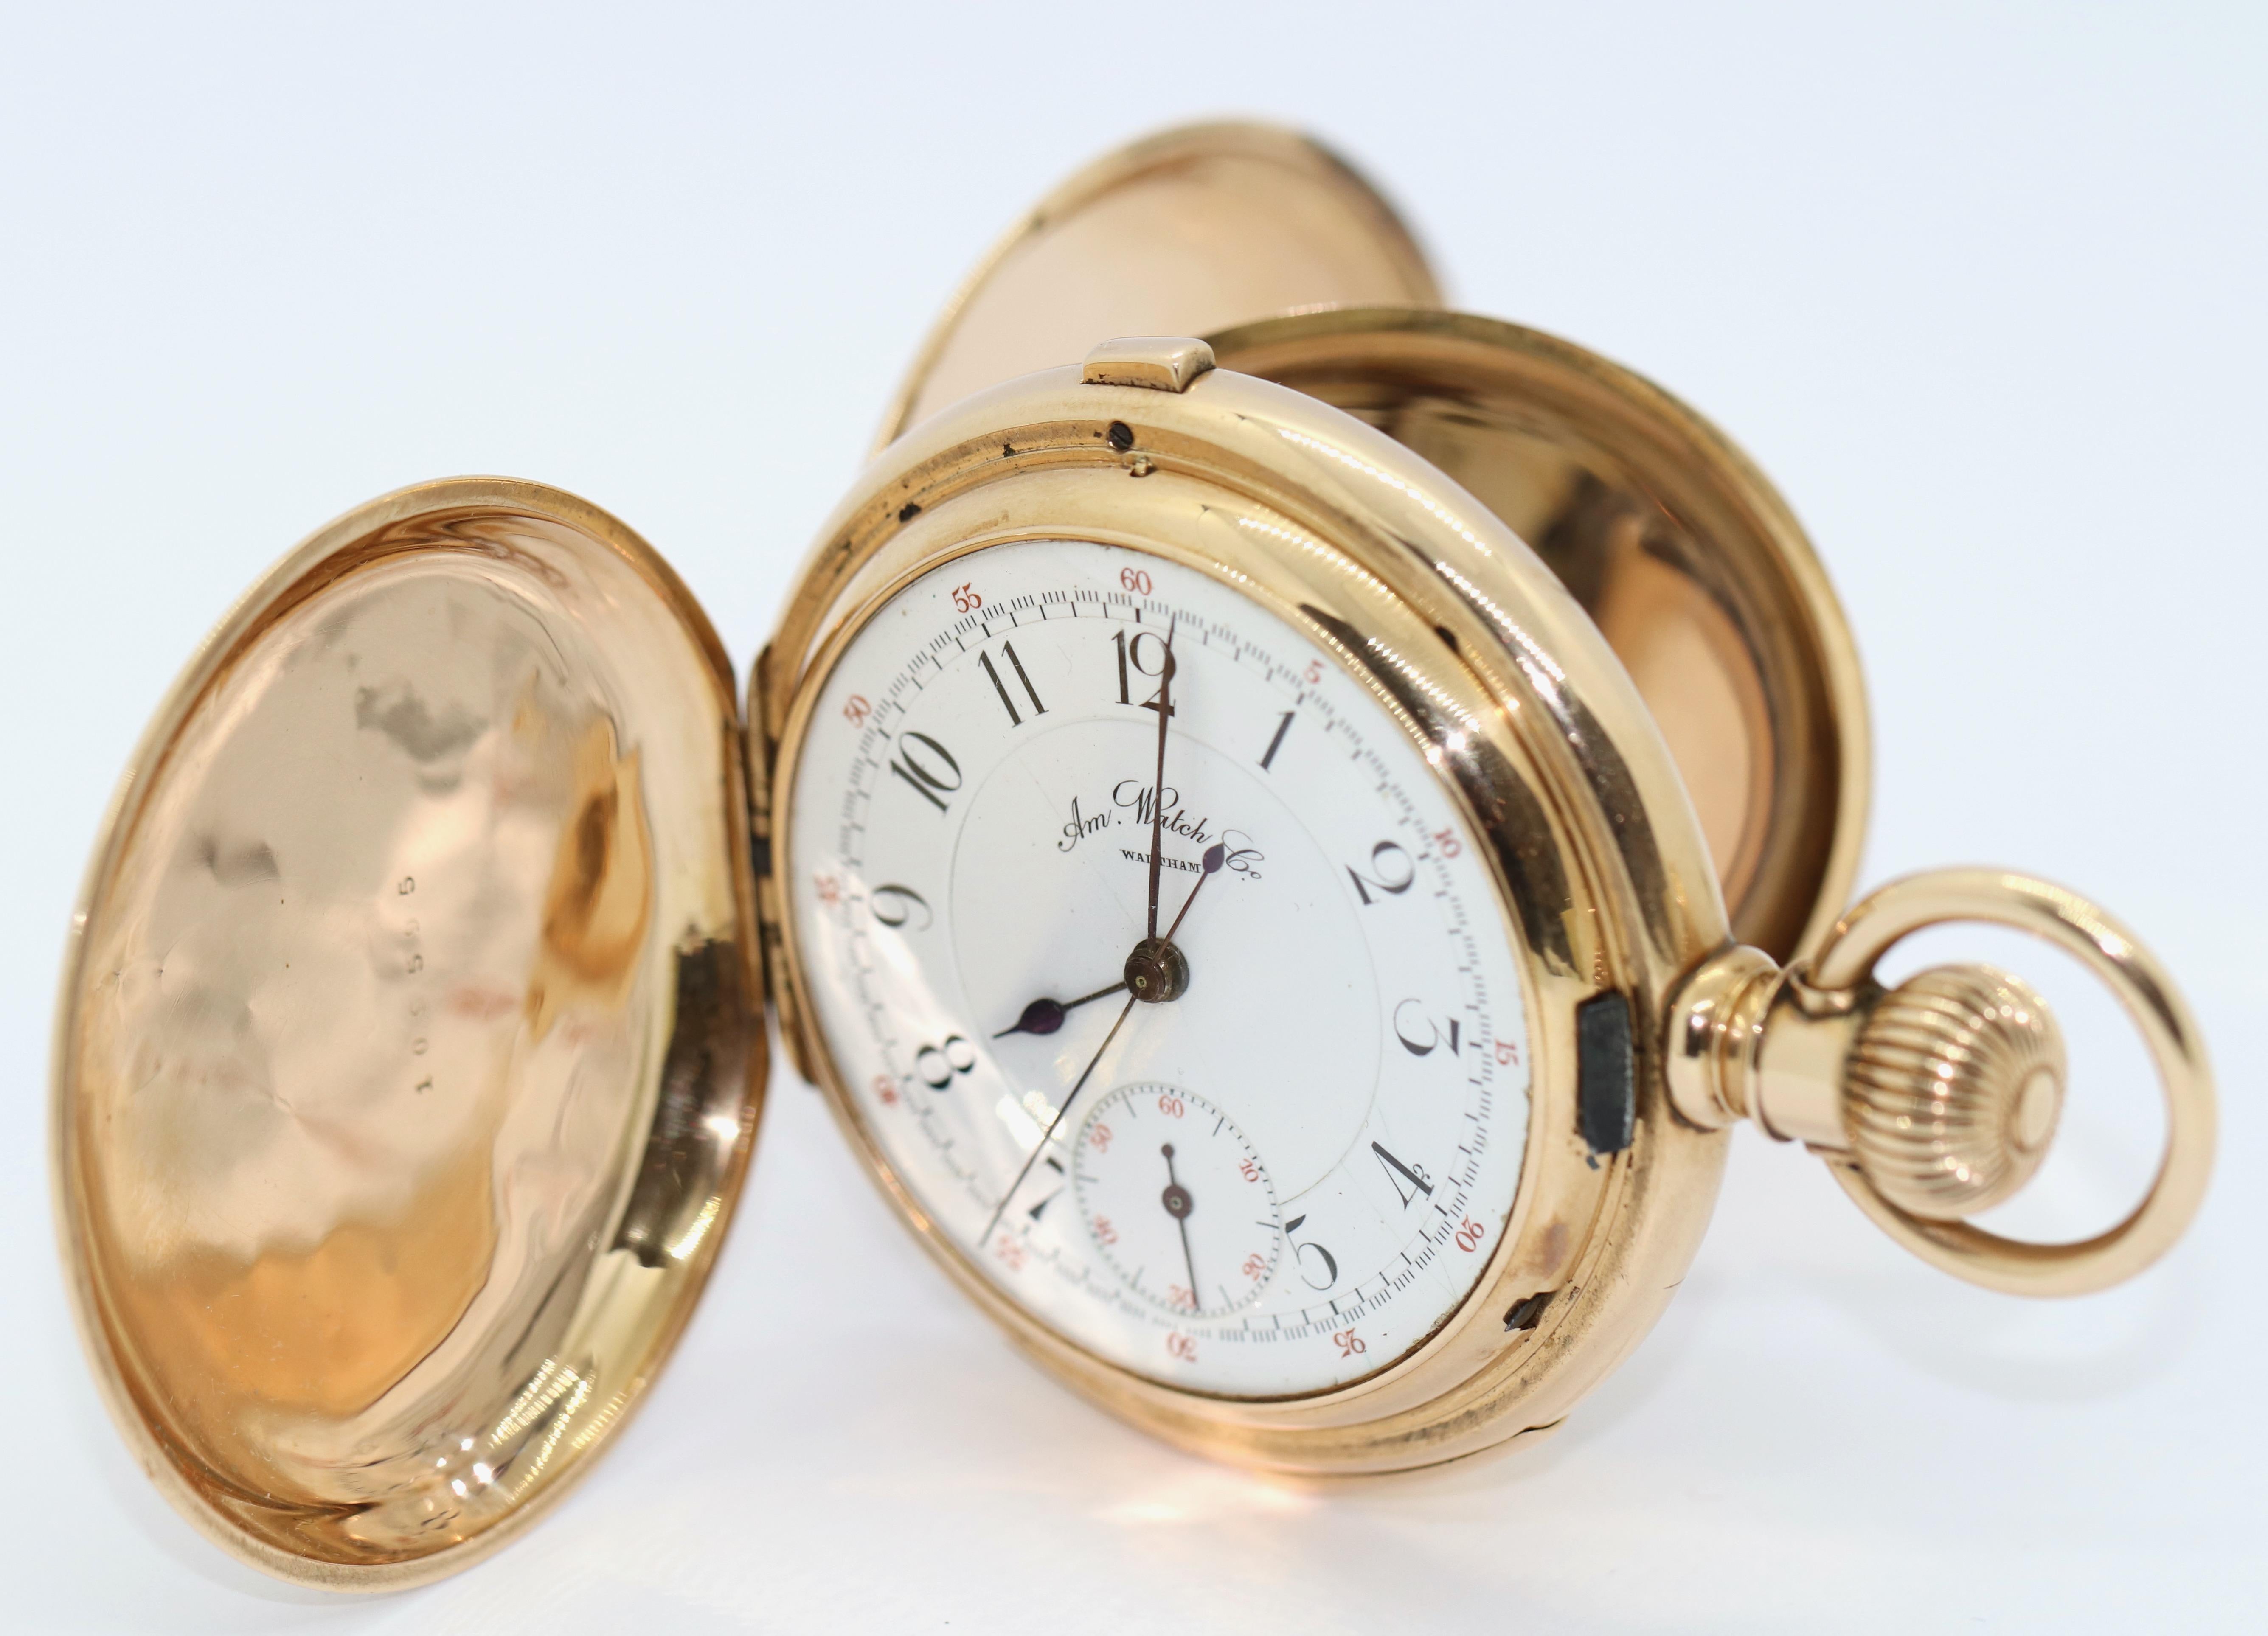 Sehr seltene komplizierte Hunter-Taschenuhr von American Watch Co. Waltham. Chronograph und Repetition. Massives 14 Karat Gold Gehäuse. Alle drei Deckel 14 Karat Gold, gestempelt.

Fall mit dem lateinischen Spruch 